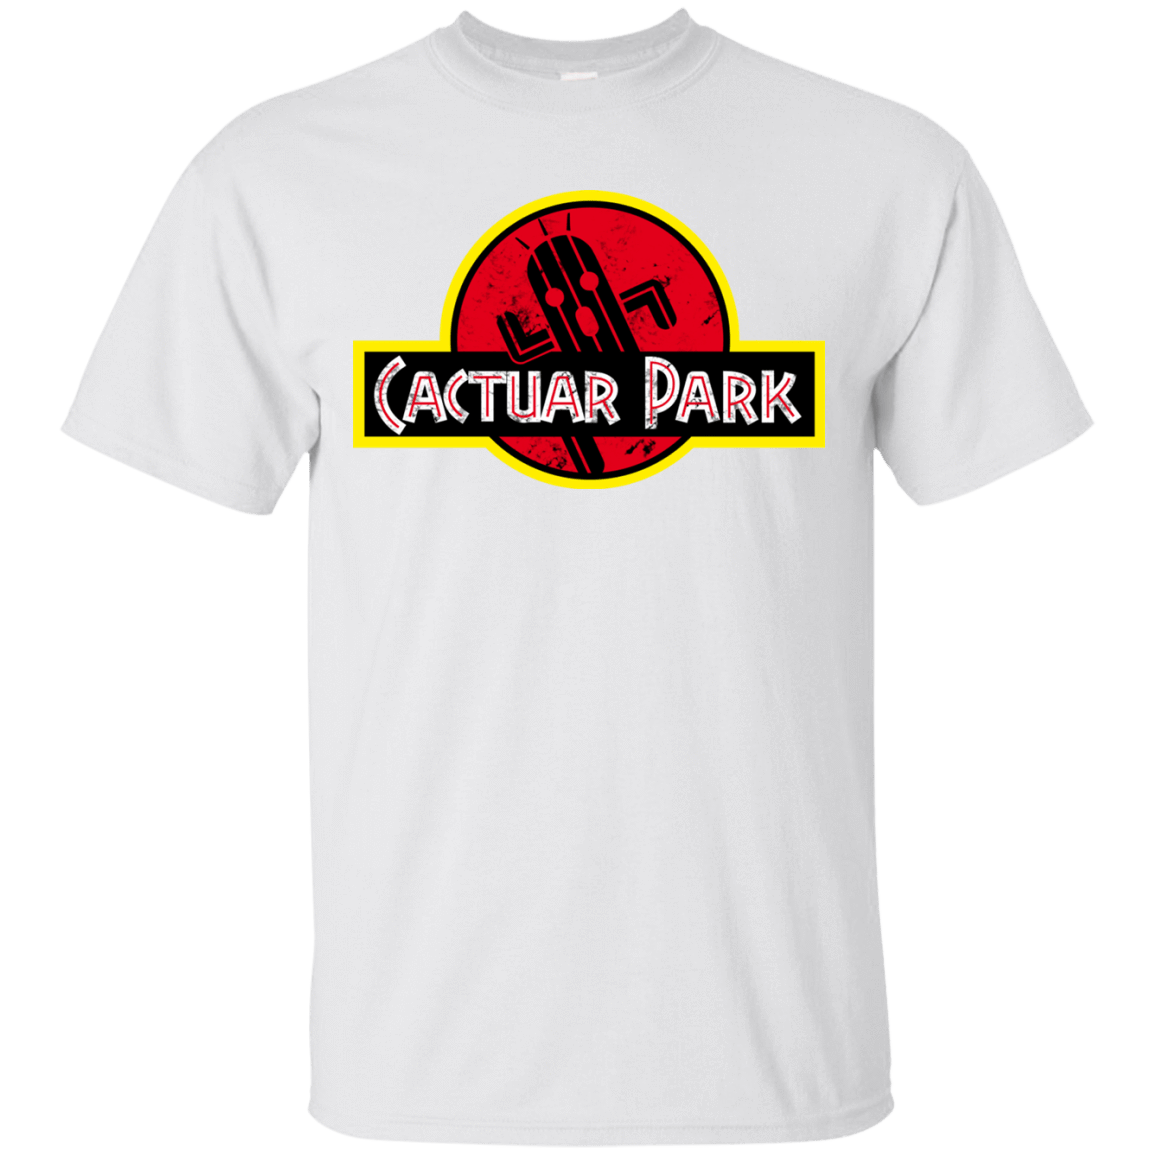 T-Shirts White / Small Cactuar Park T-Shirt